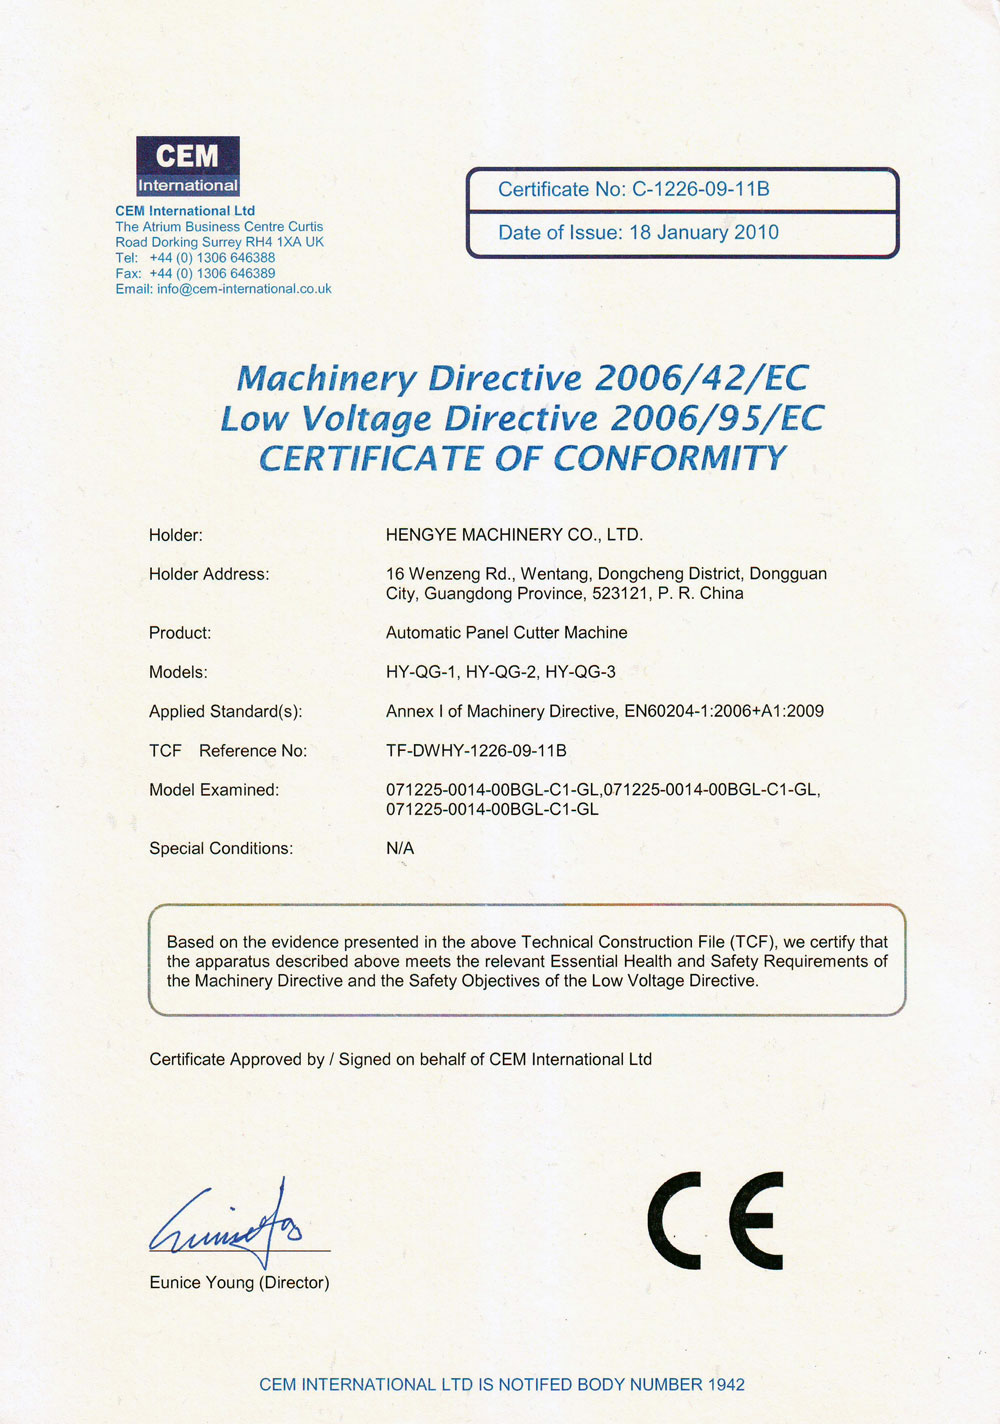 CE: Certification